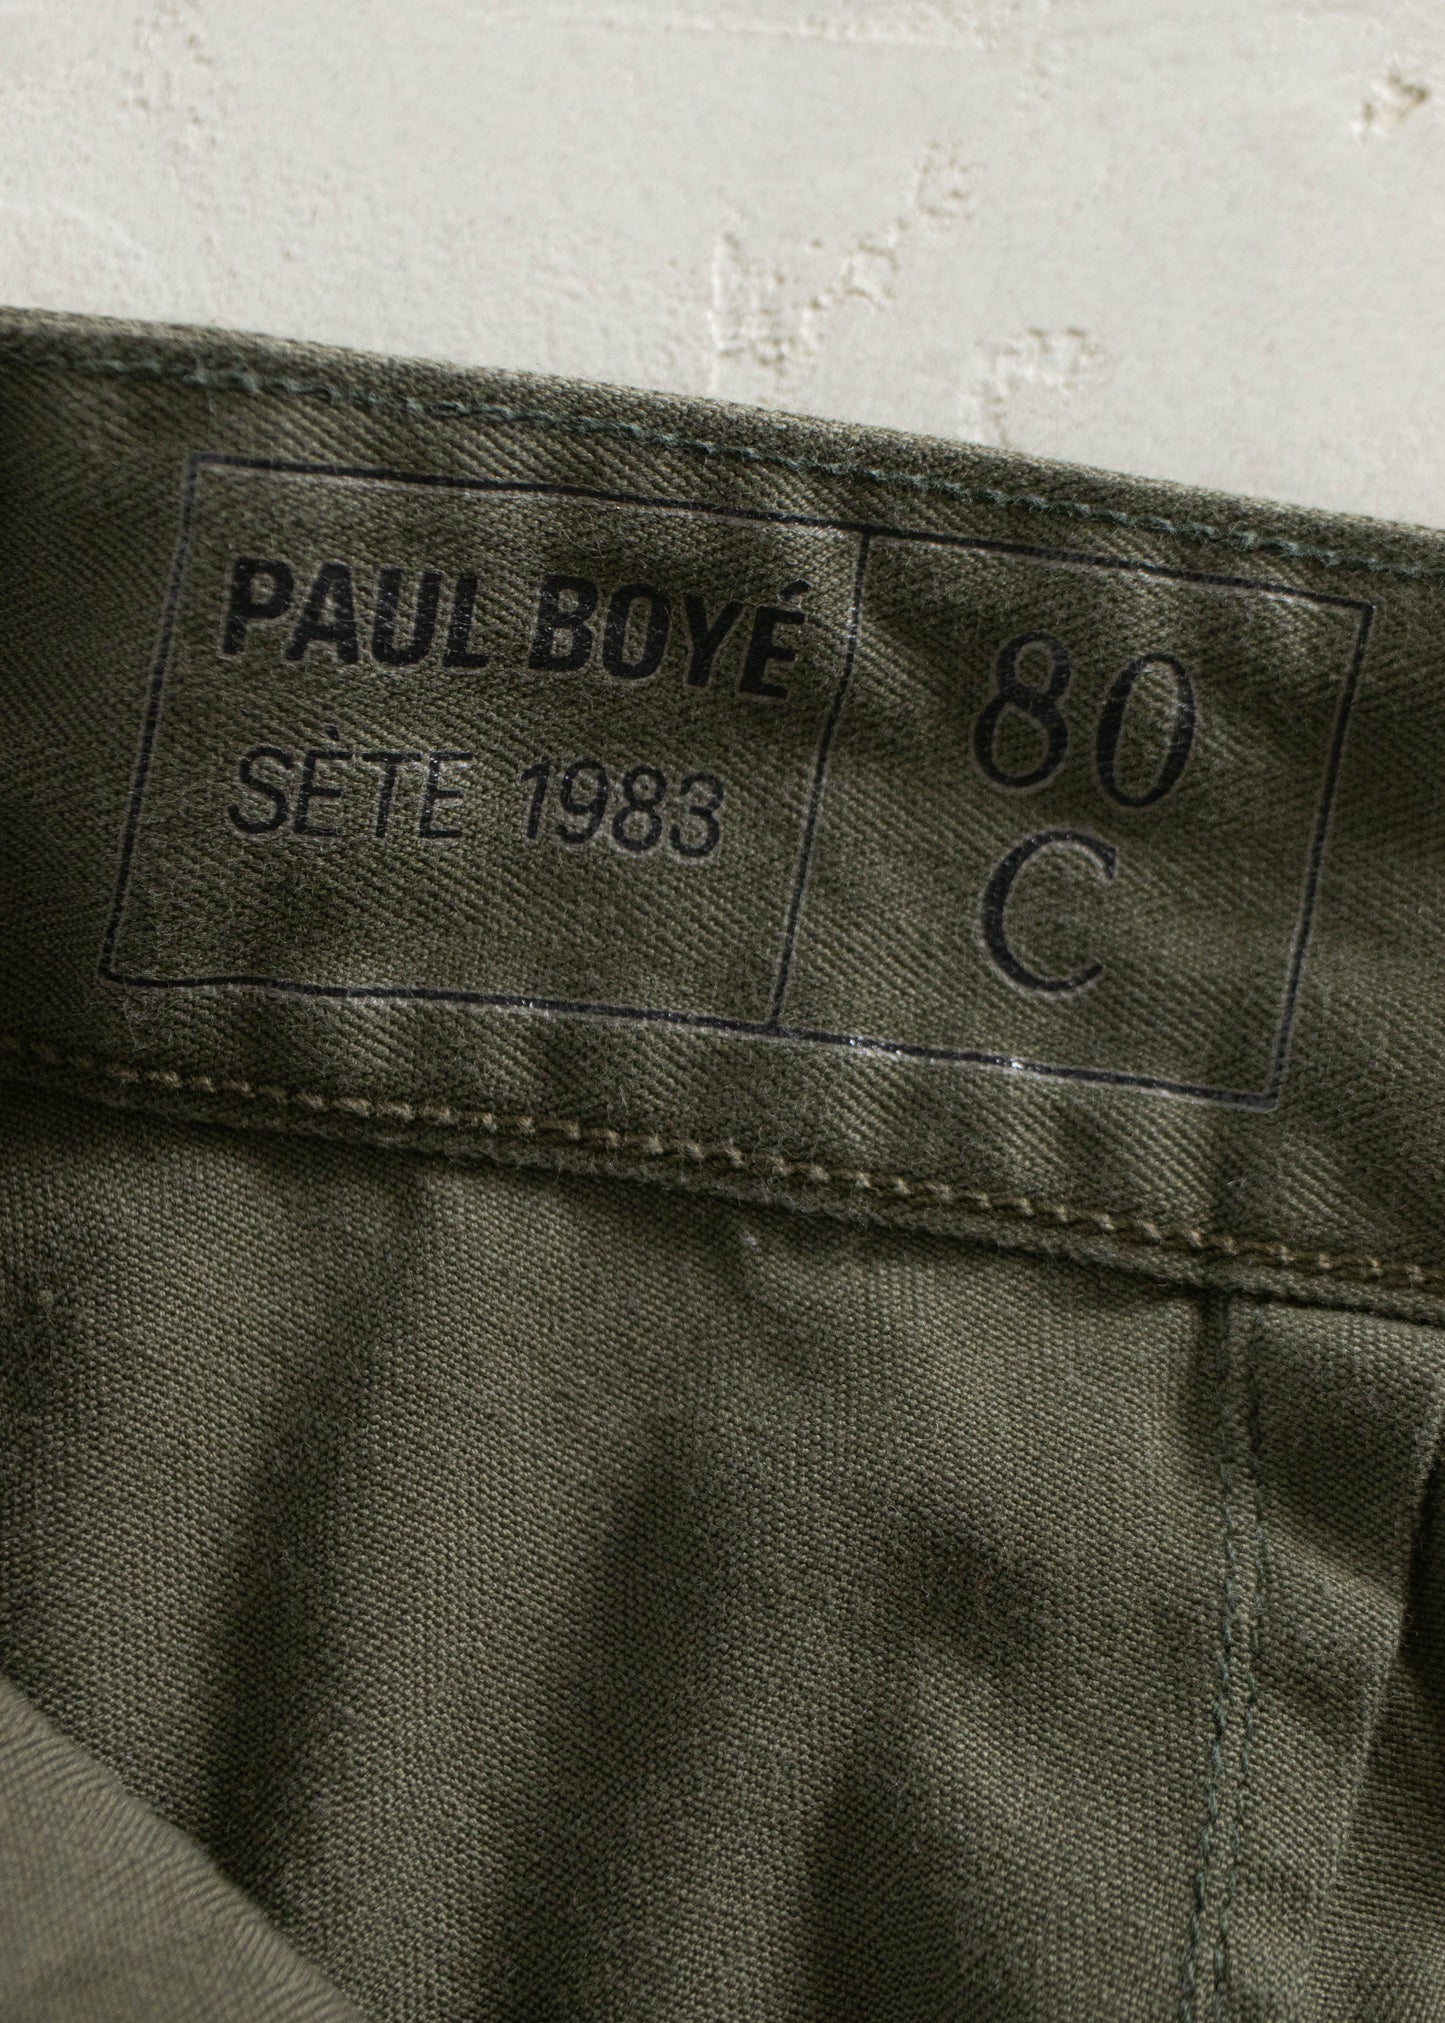 Vintage 1980s Paul Boyé French Military Cargo Pants Size Women's 27 Men's 30